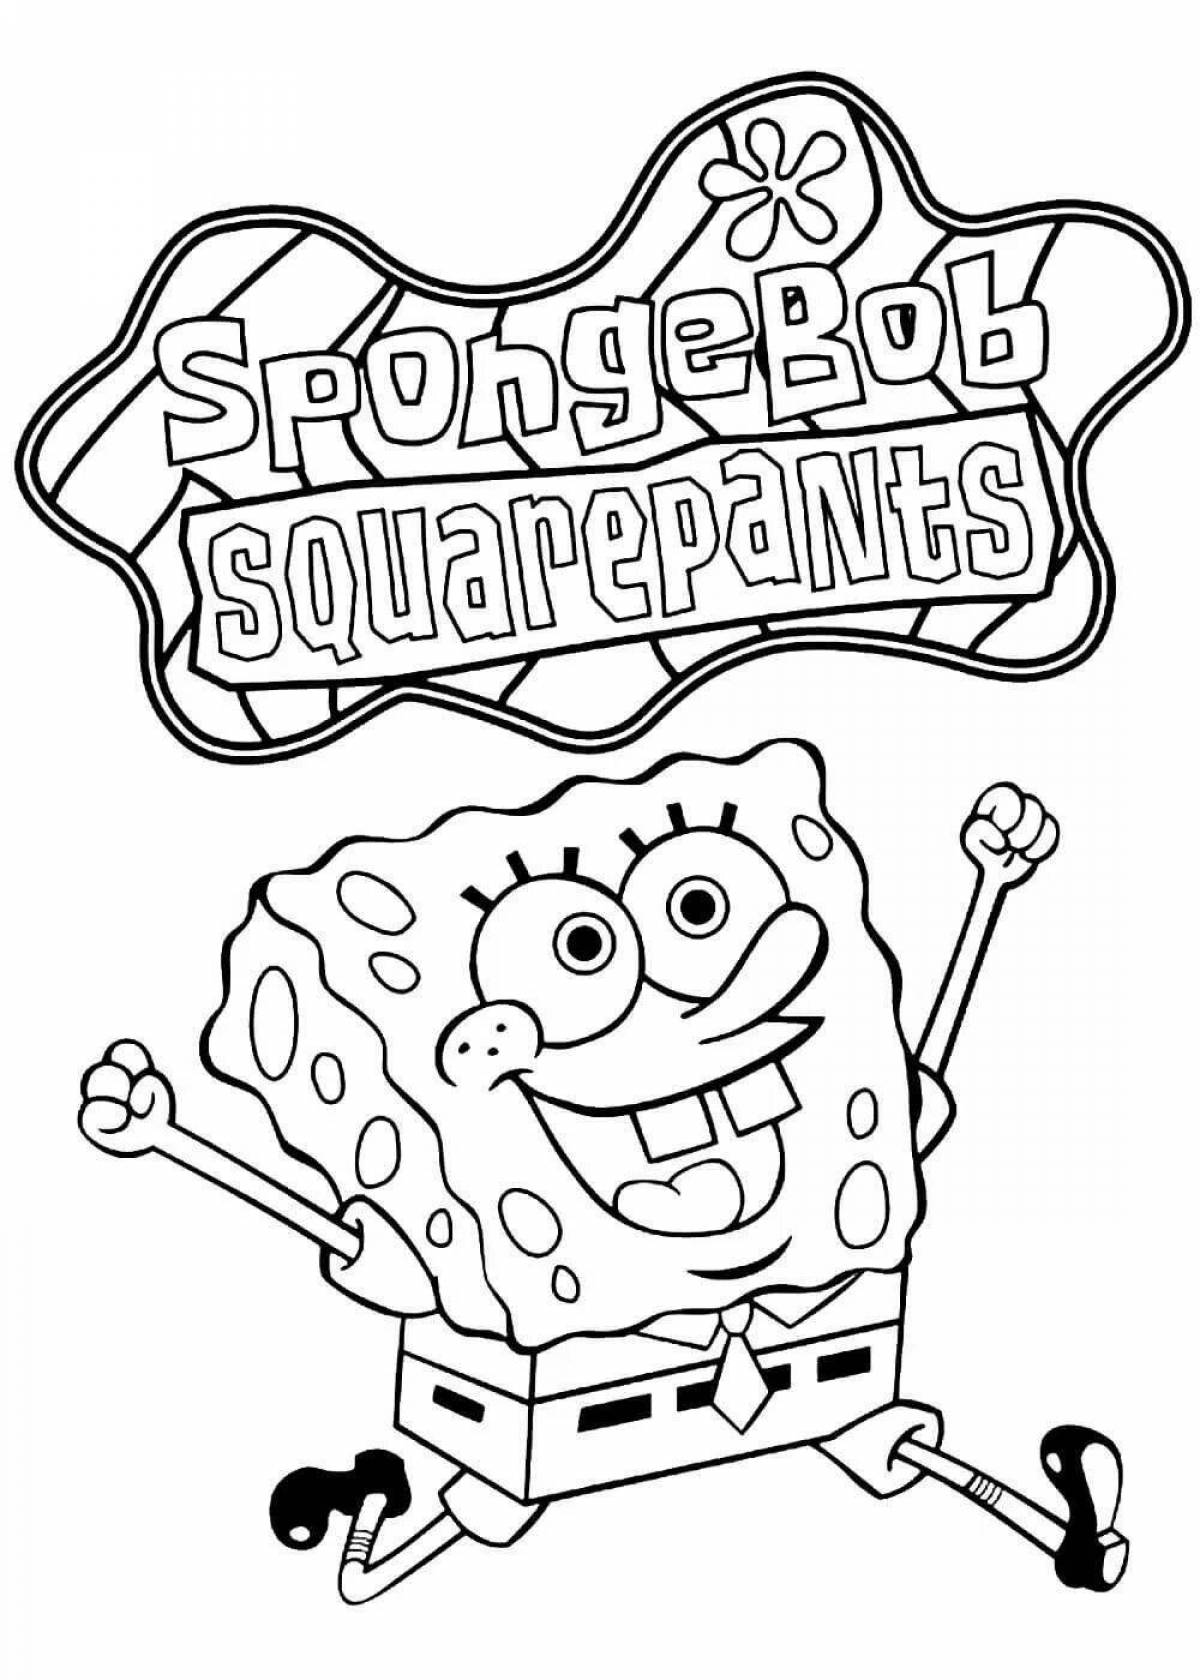 Great spongebob coloring game